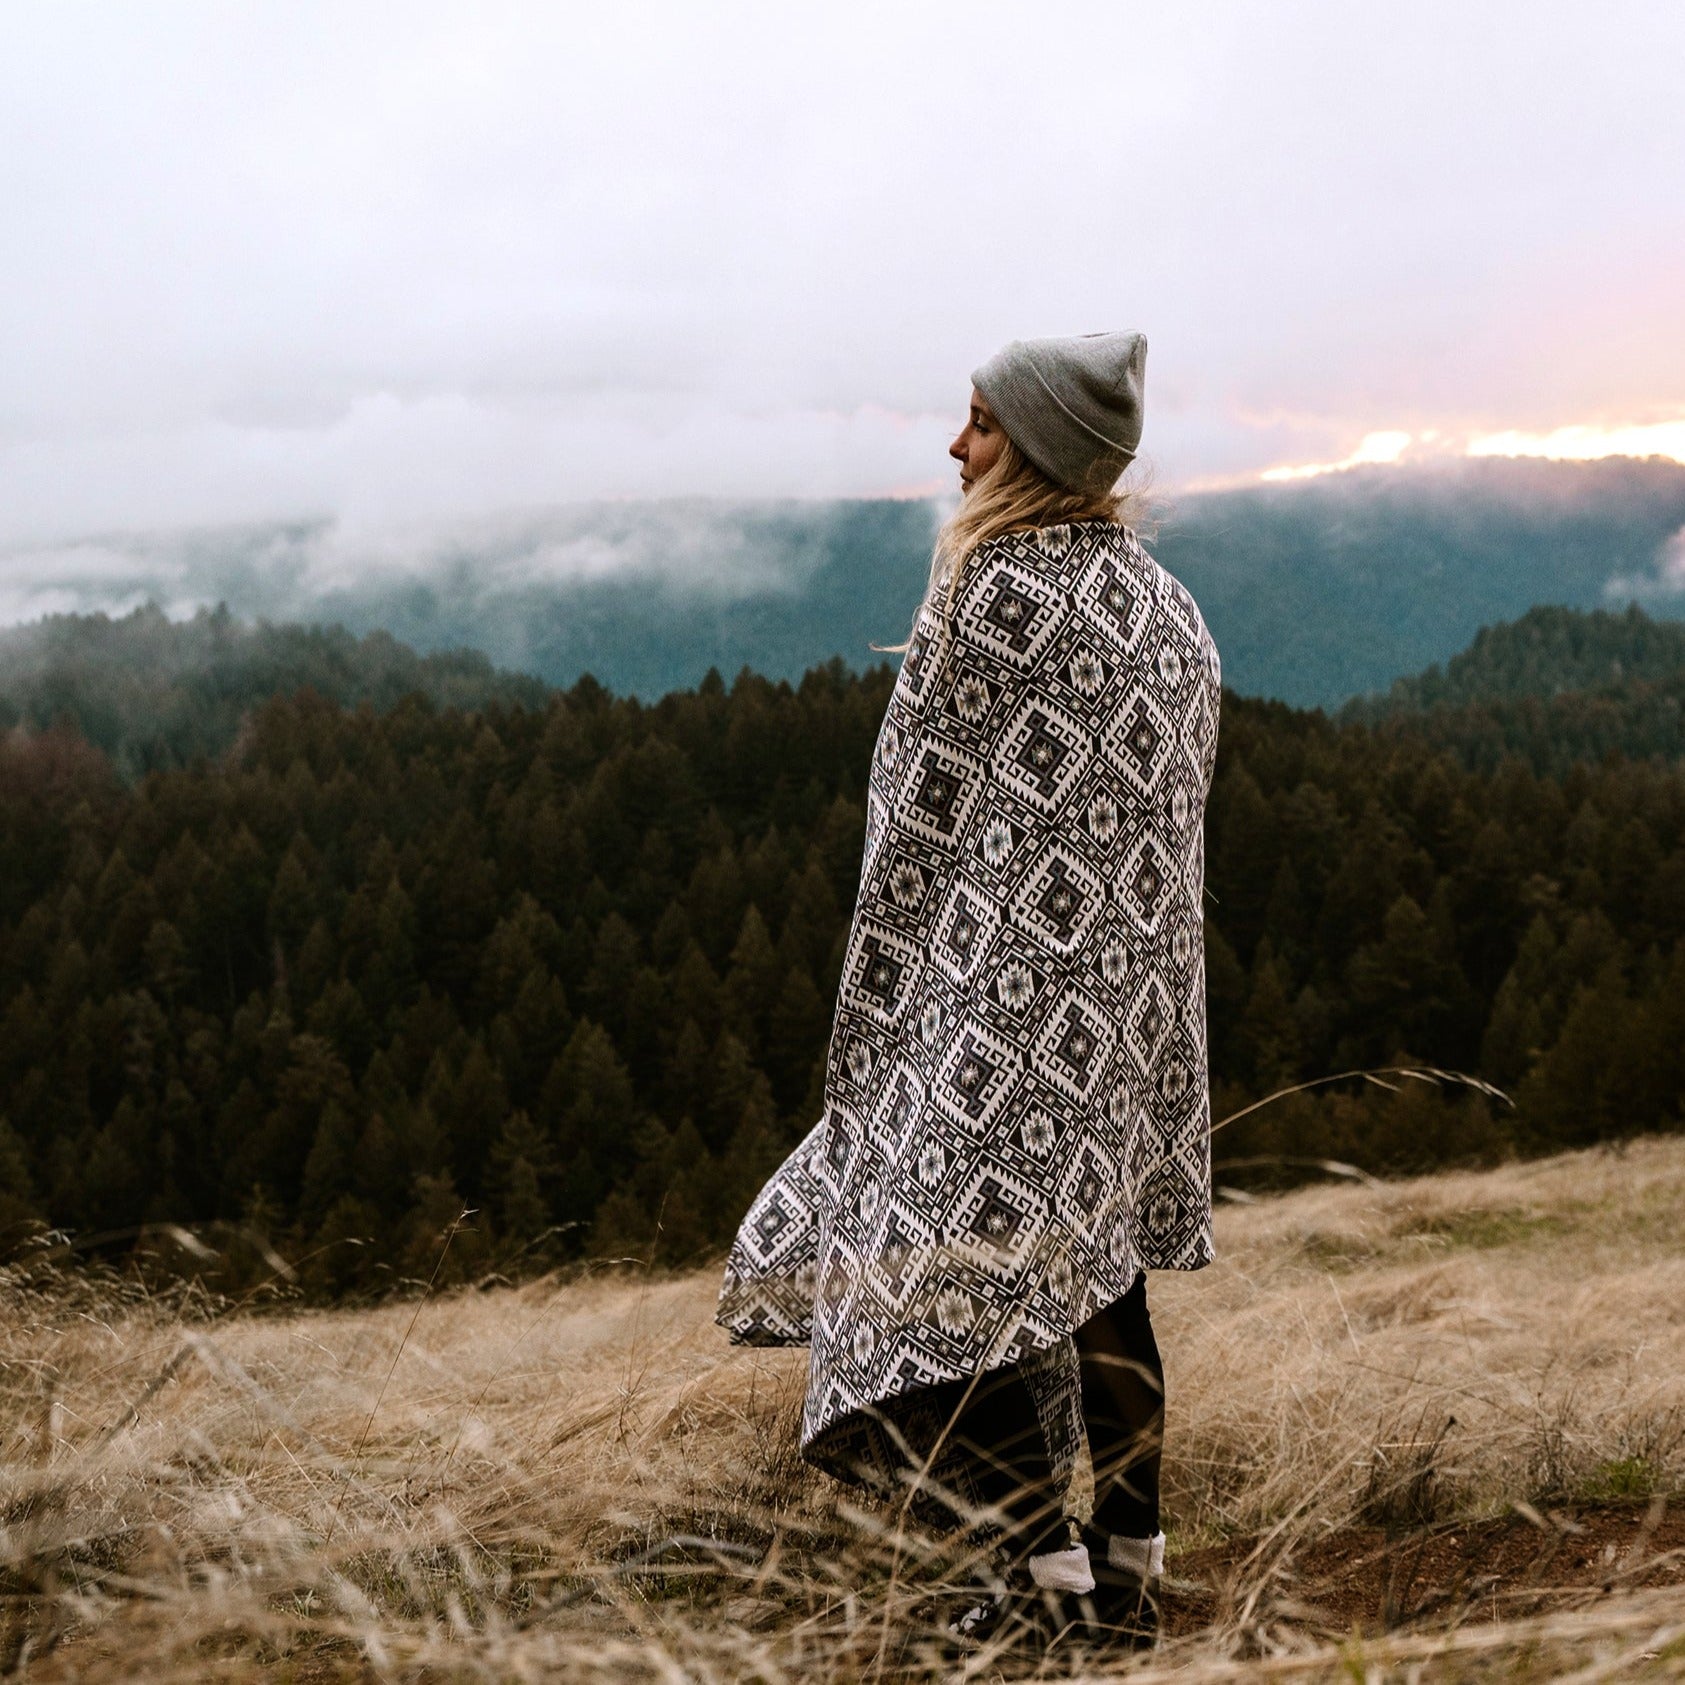 Handwoven blanket for your outdoor adventures.